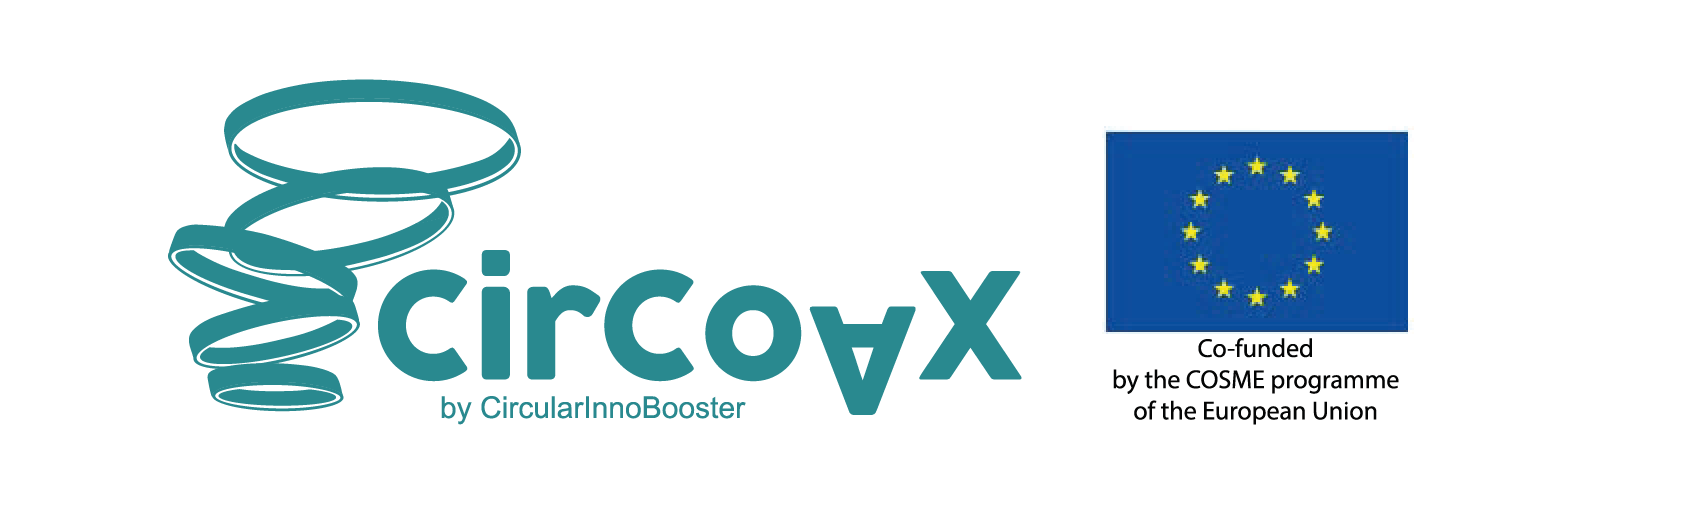 Logo_Circoax